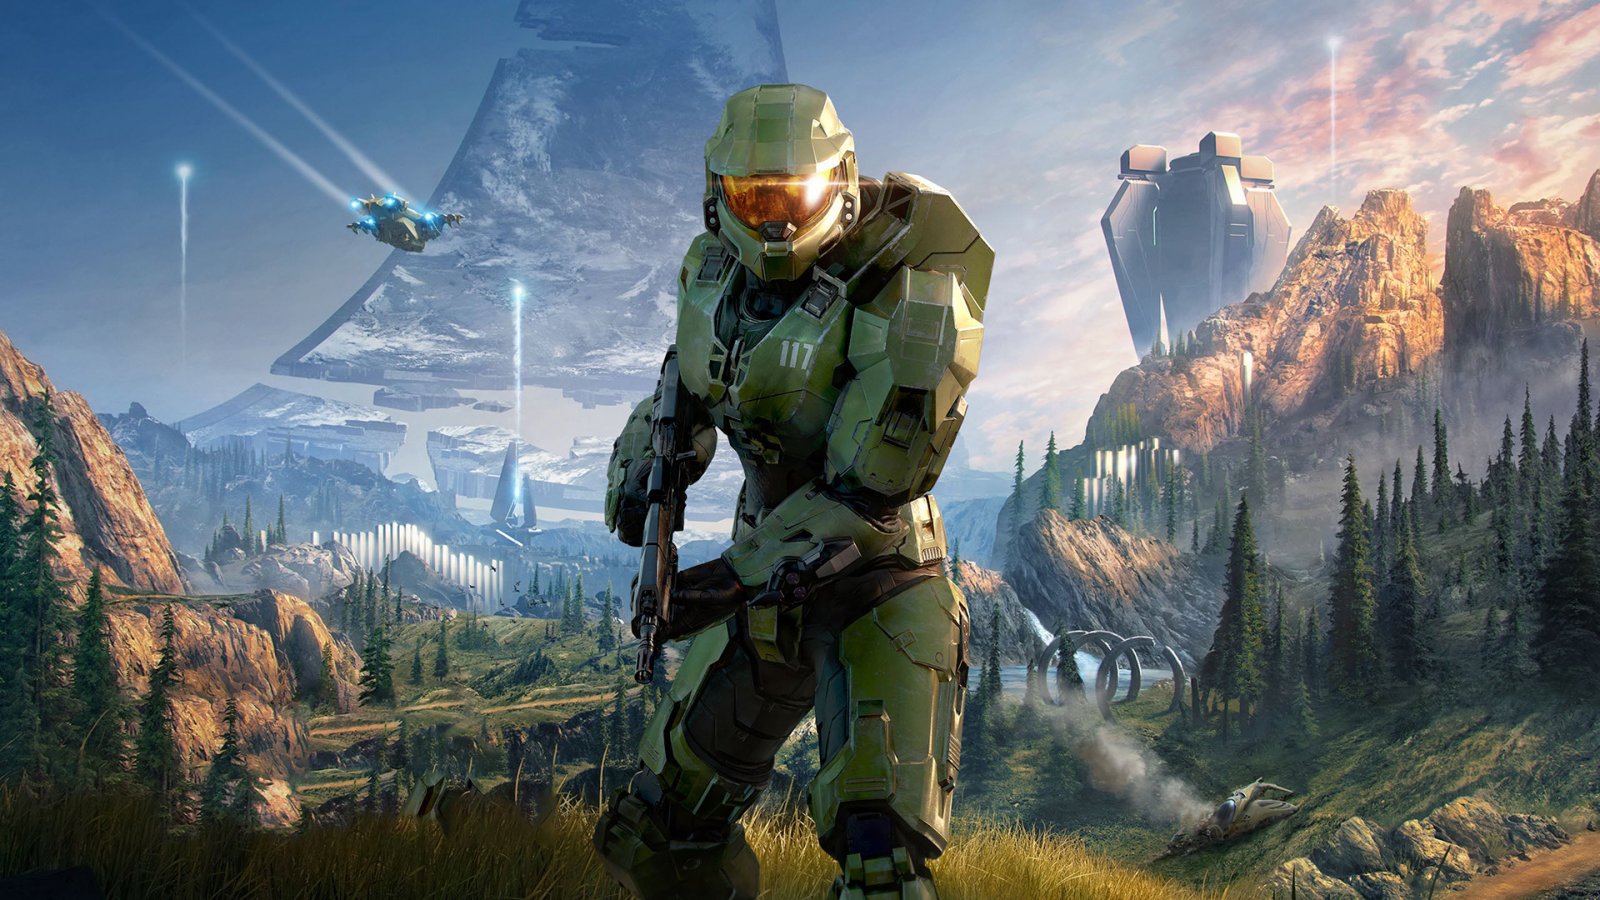 Halo cambierà engine e Microsoft riorganizza 343 Industries, dice Bloomberg